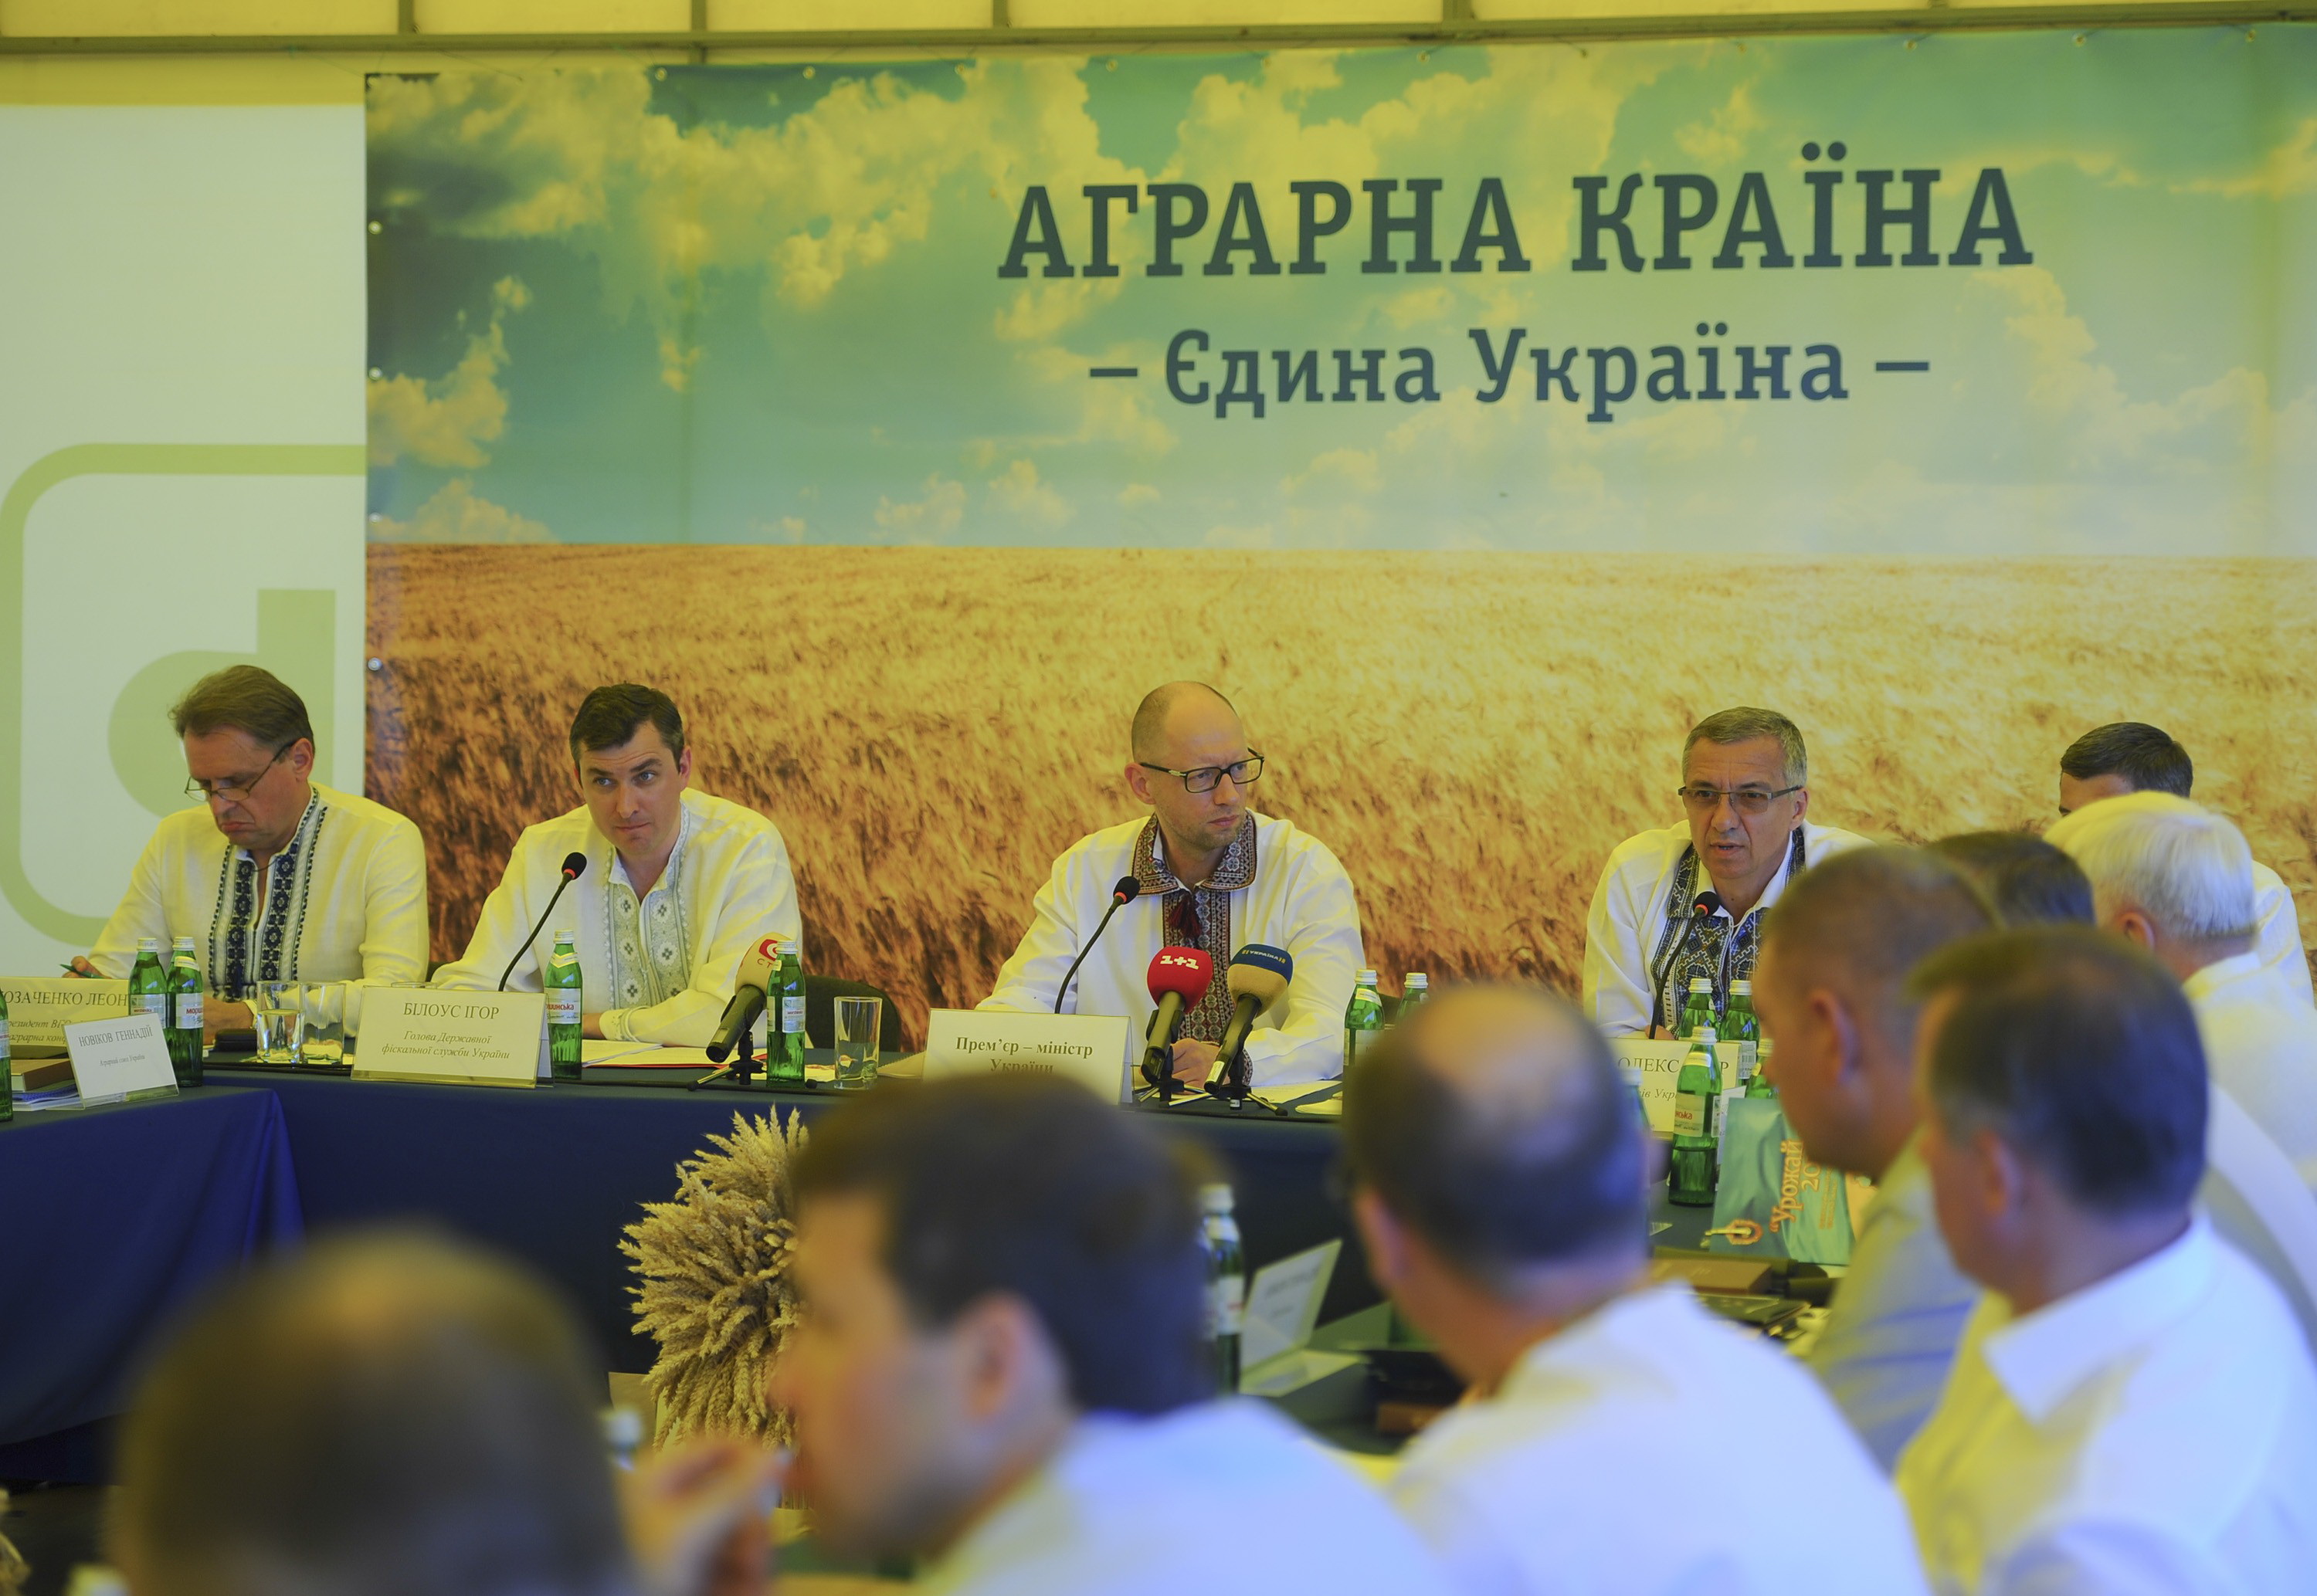 Перед аграріями України поставлена амбітна мета: увійти у п’ятірку лідерів на світовому продовольчому ринку. Фото з Урядового порталу